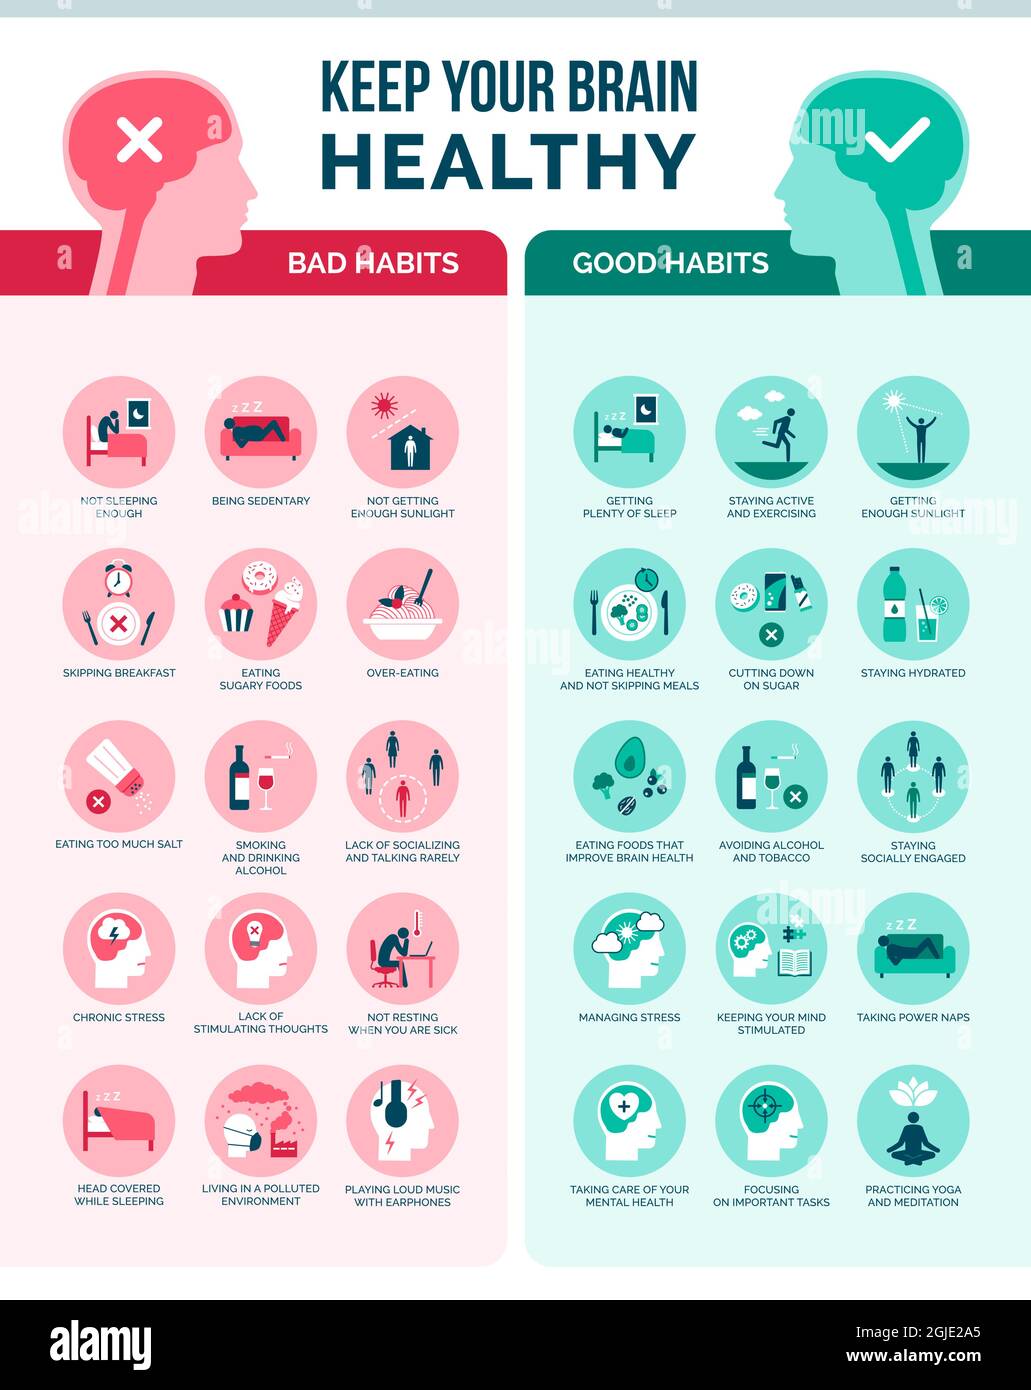 Gardez votre cerveau en bonne santé : mauvaises habitudes et bonnes habitudes, infographie sur les soins de santé et la prévention Illustration de Vecteur